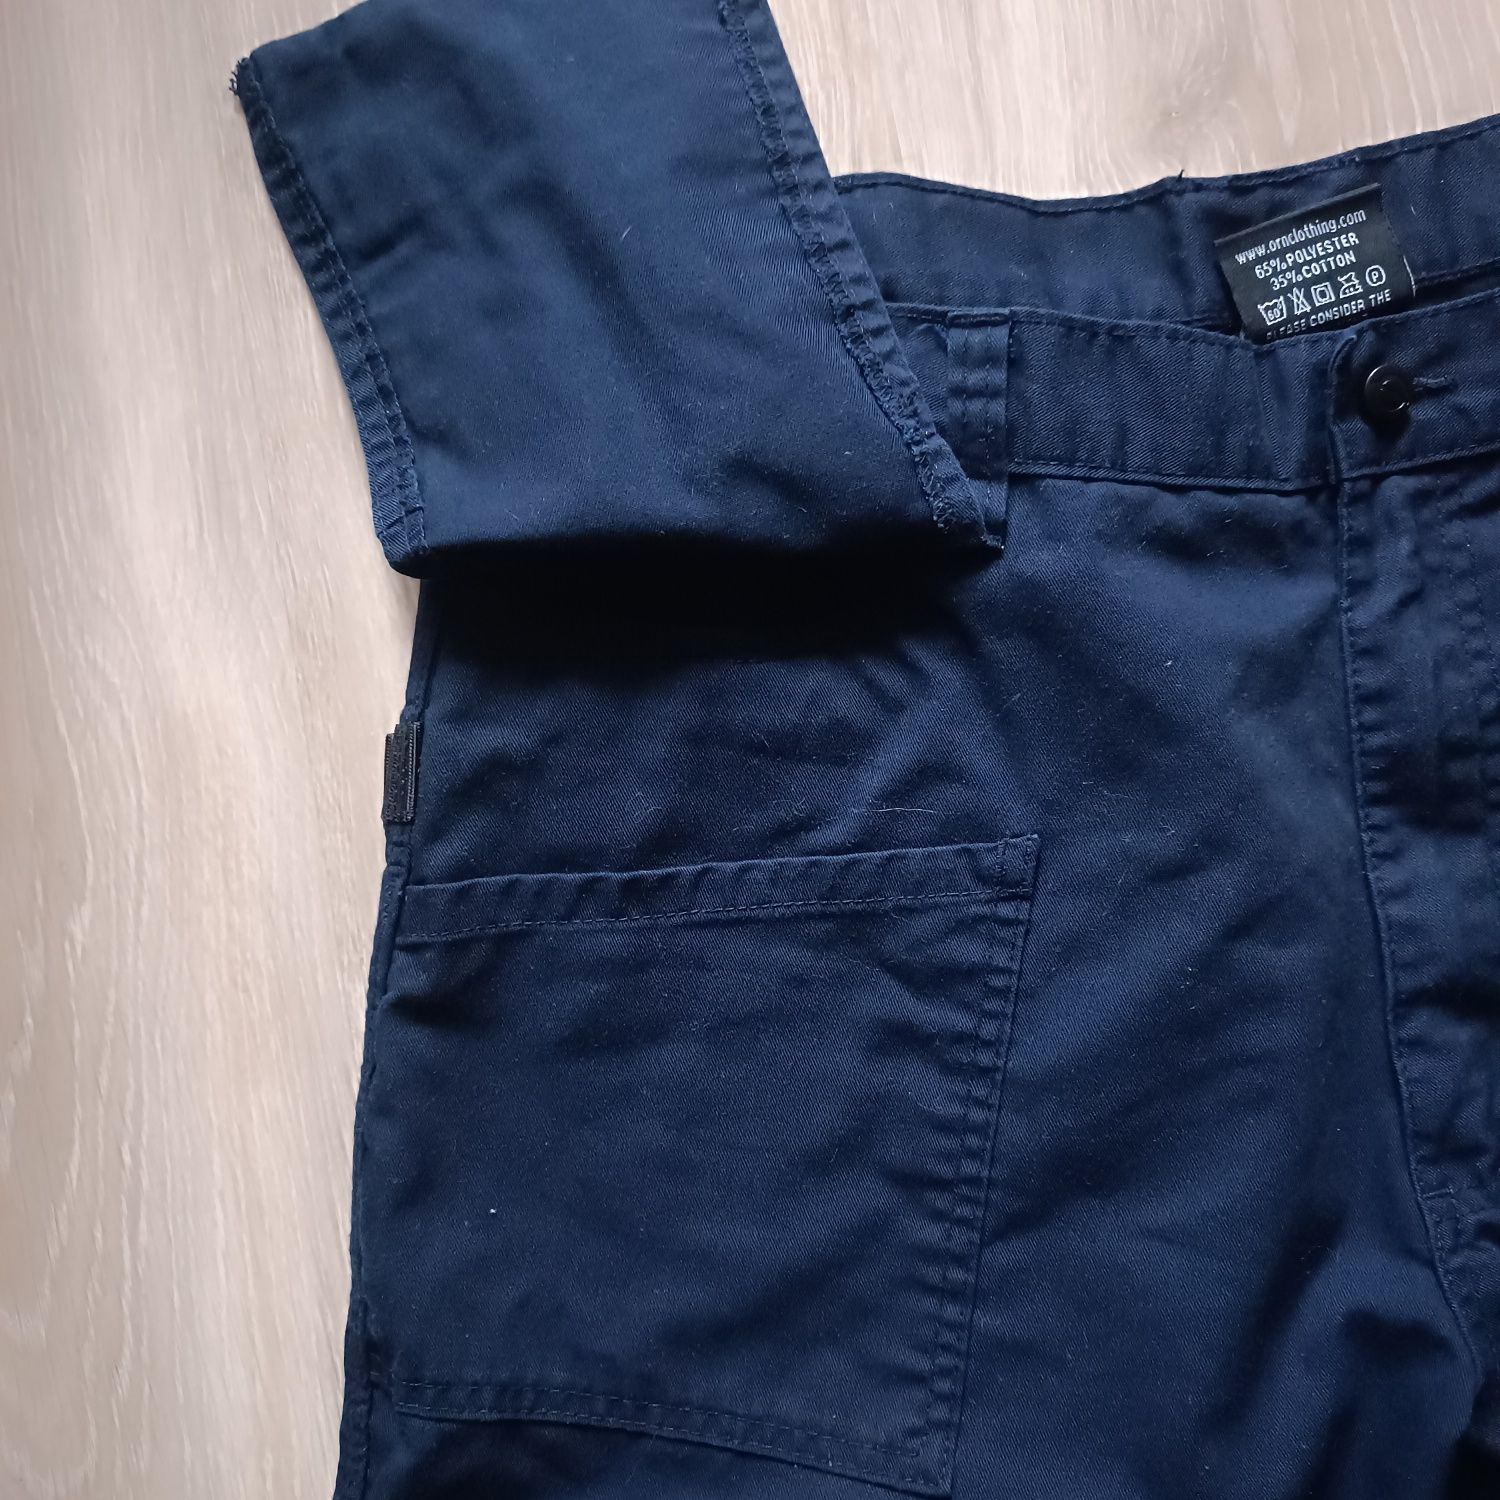 ORN Work wear штаны рабочие монтажные размер 38R, состояние идеальное.